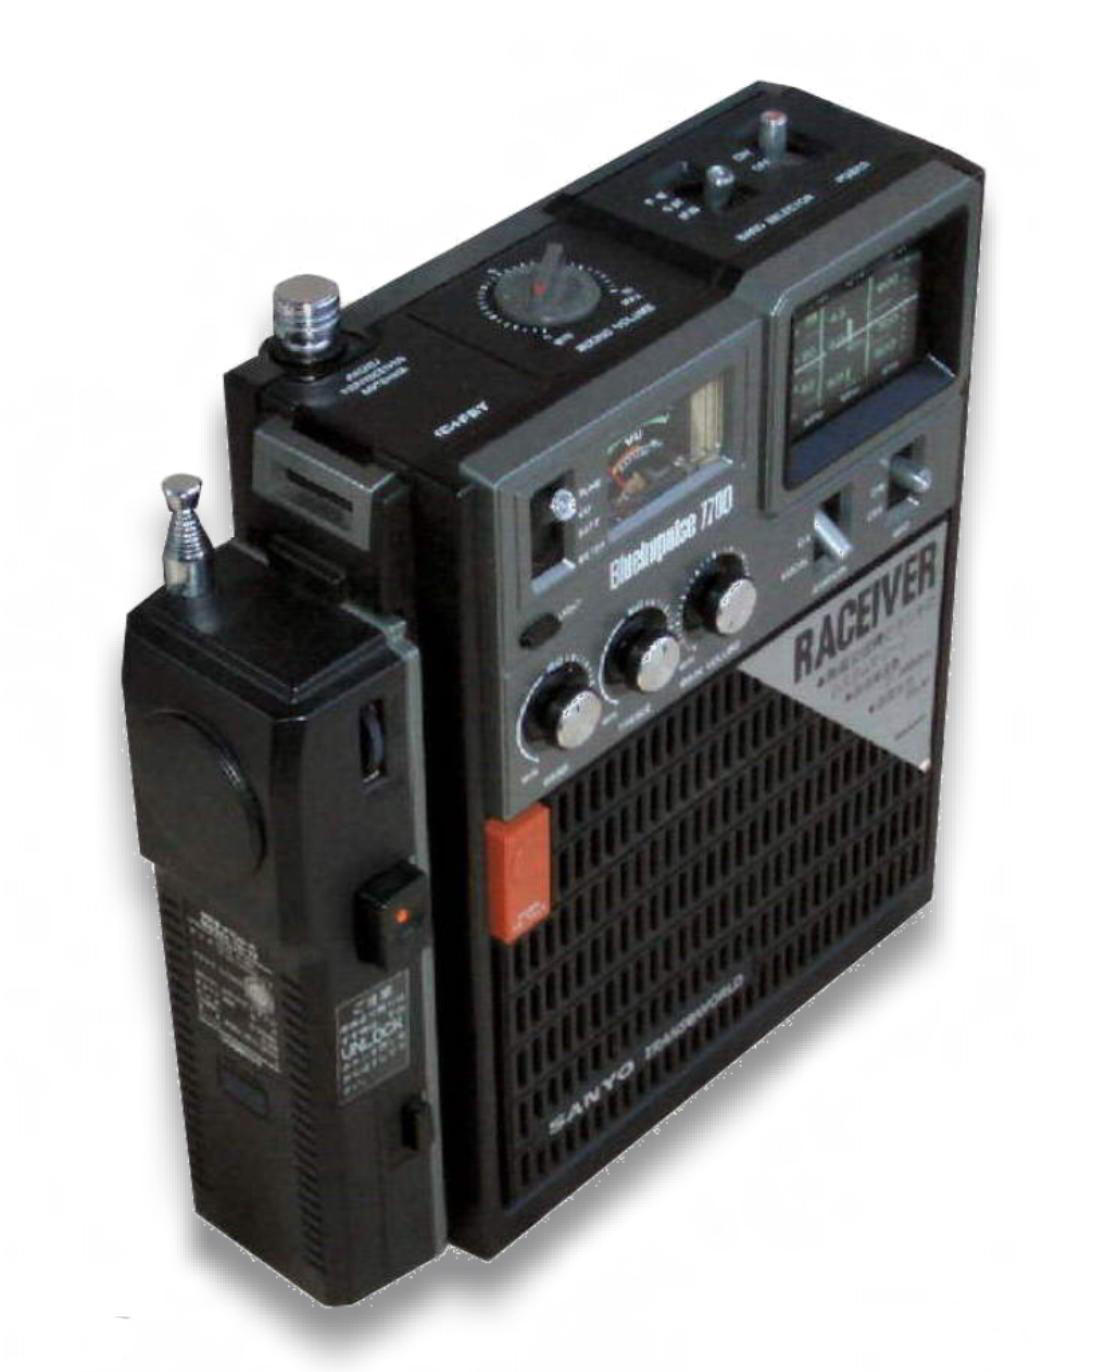 ラシーバ(RP7700): BCLラジオネット